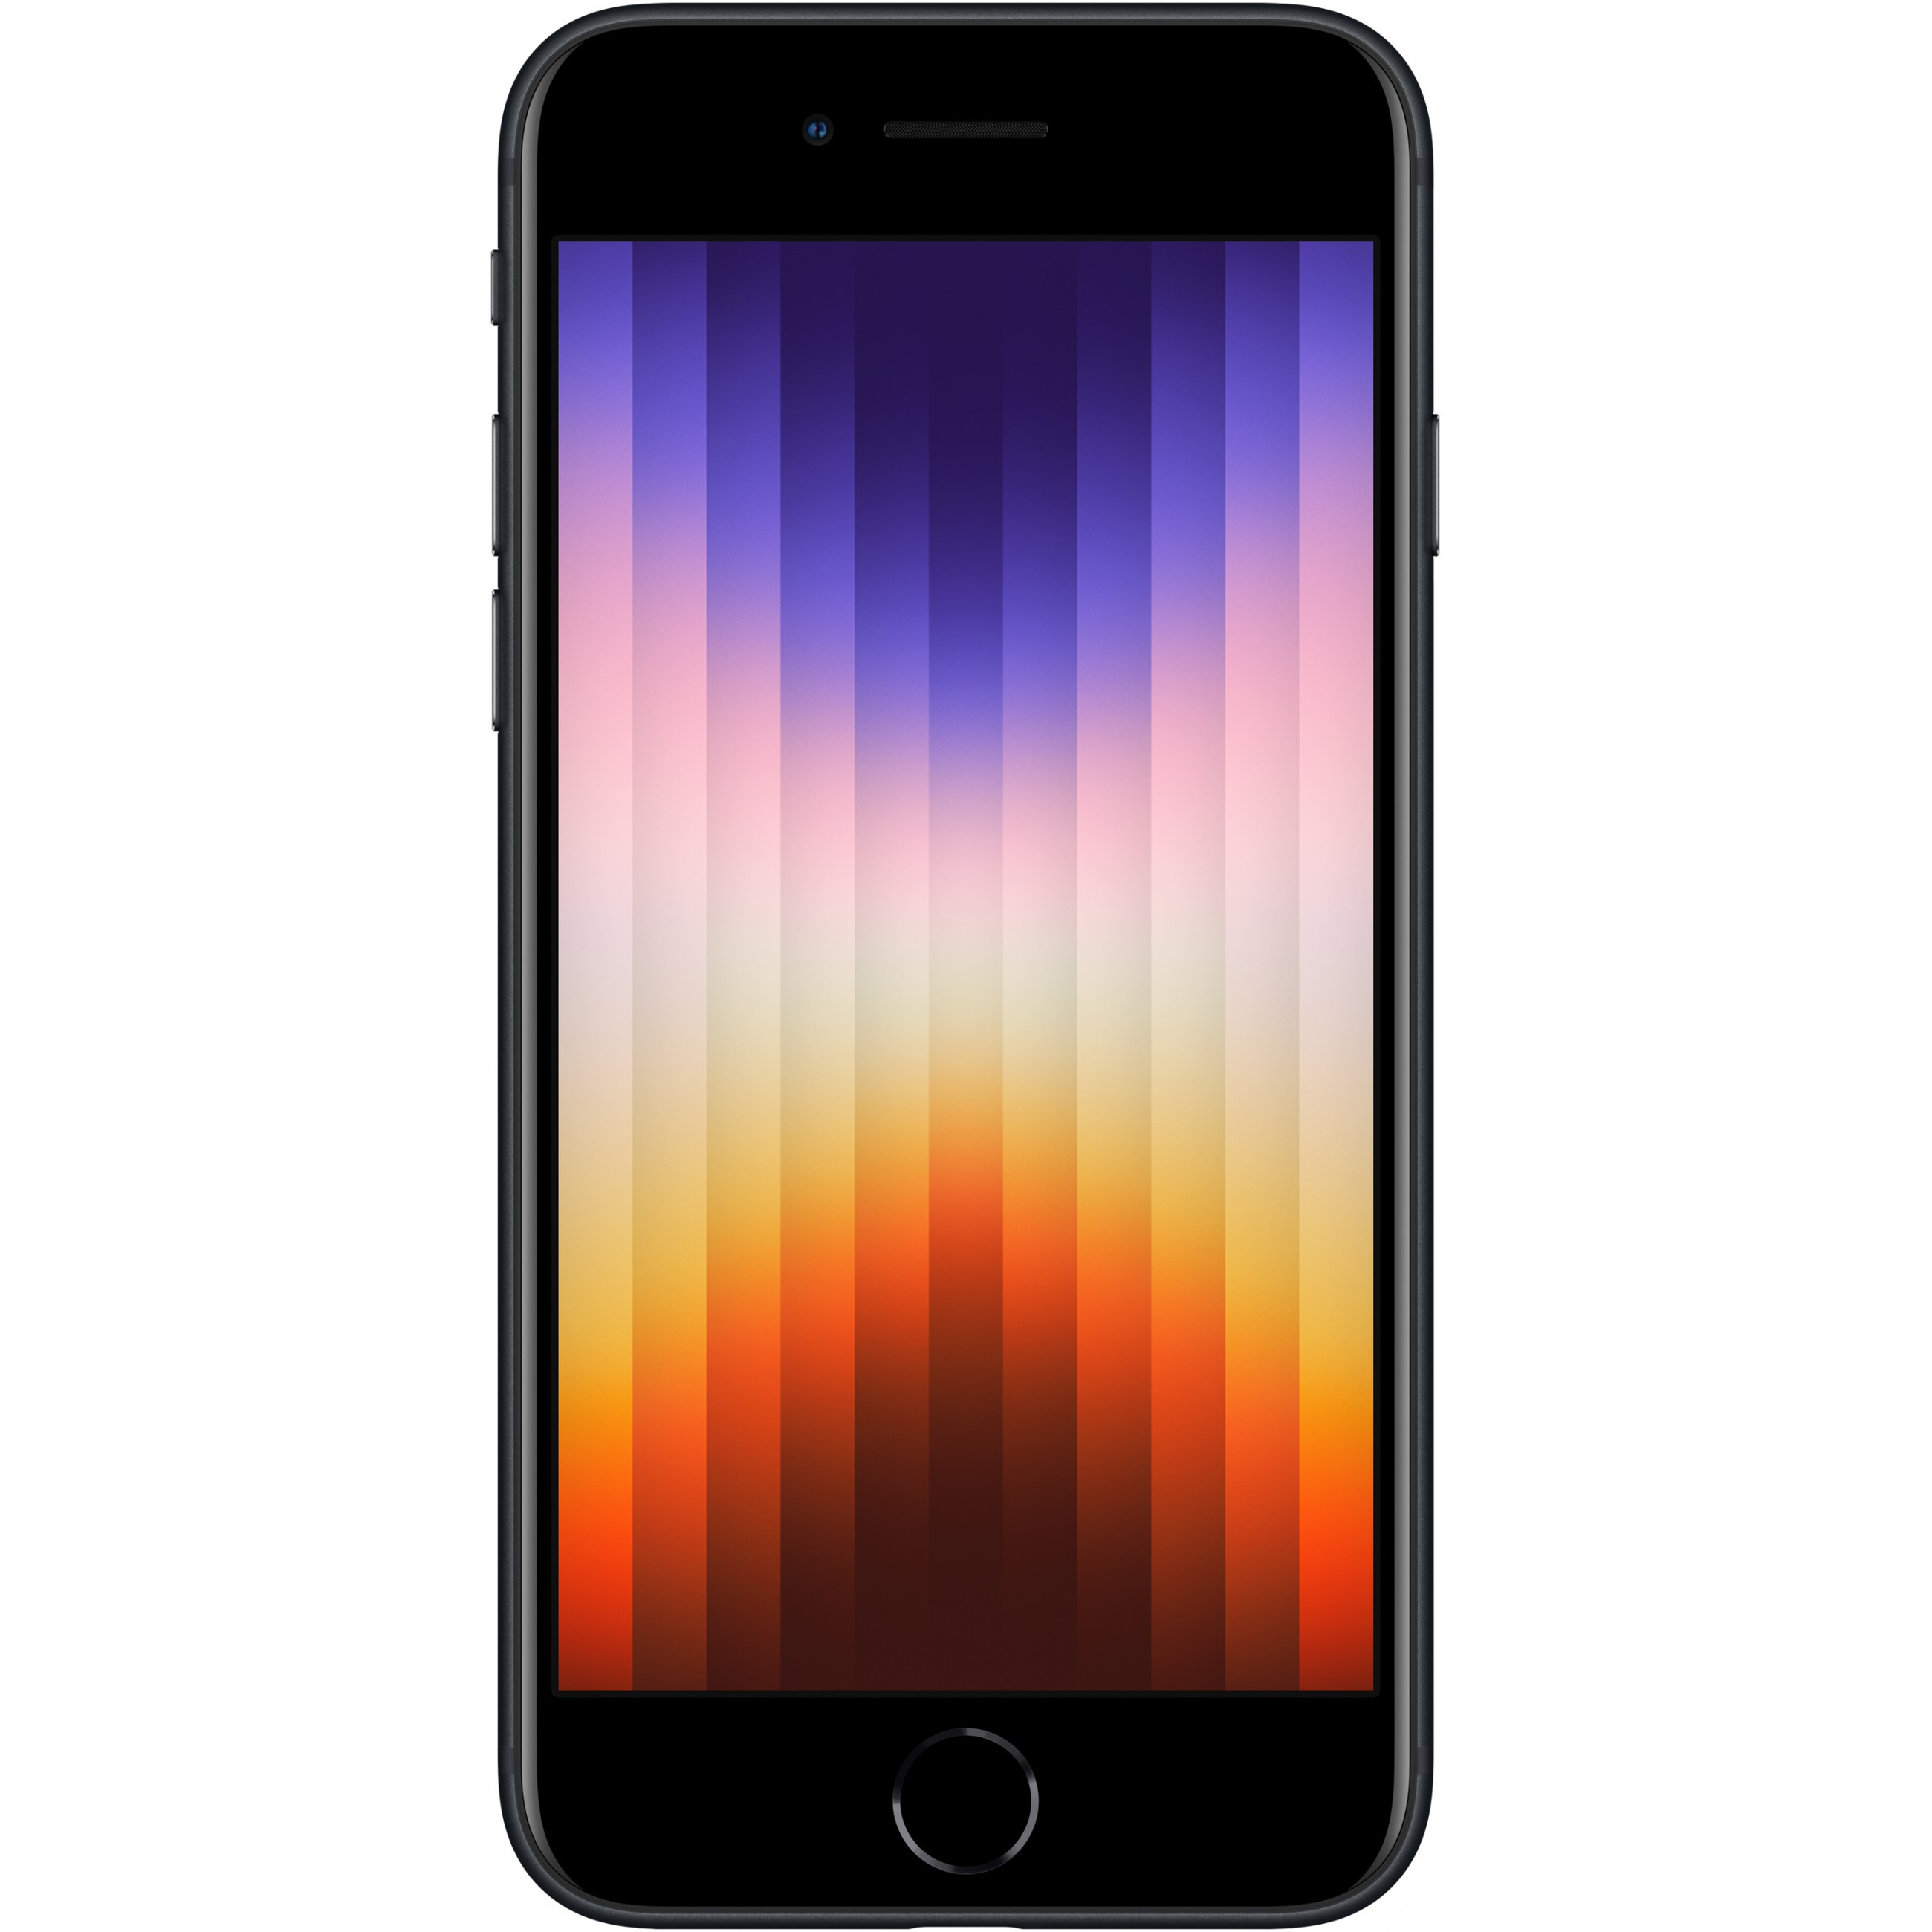 Apple iPhone SE 11,9 cm (4.7 Zoll) Dual-SIM iOS 15 5G 128 GB Schwarz